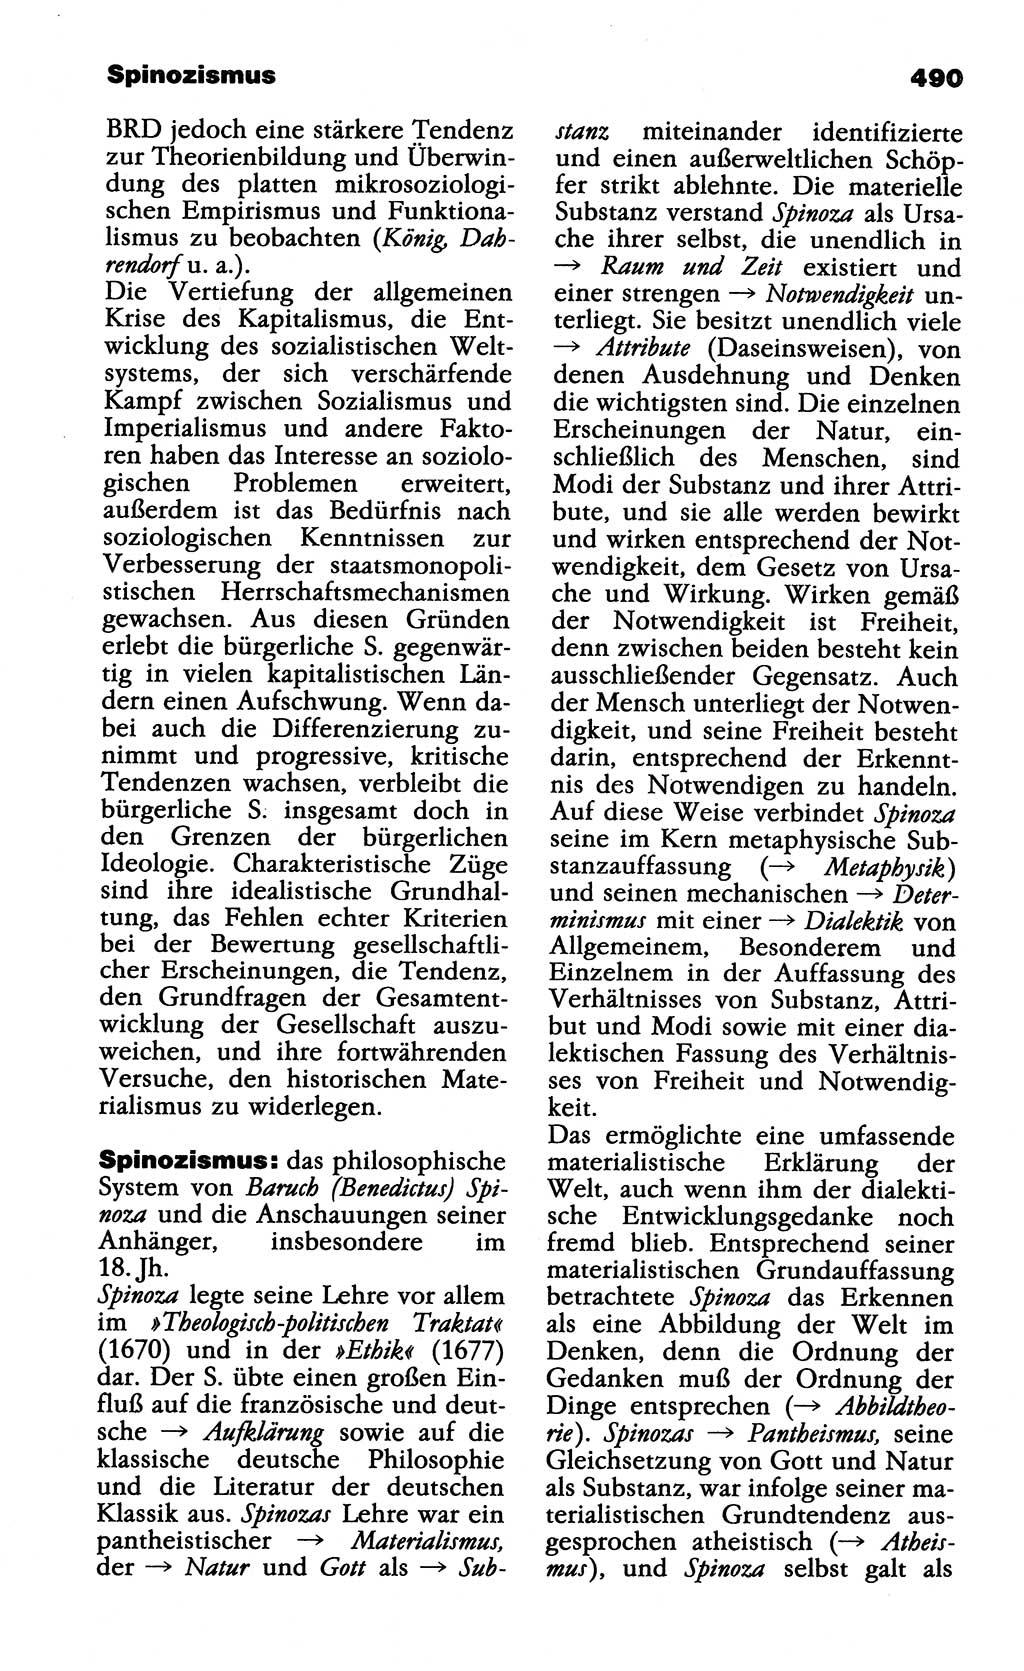 Wörterbuch der marxistisch-leninistischen Philosophie [Deutsche Demokratische Republik (DDR)] 1985, Seite 490 (Wb. ML Phil. DDR 1985, S. 490)